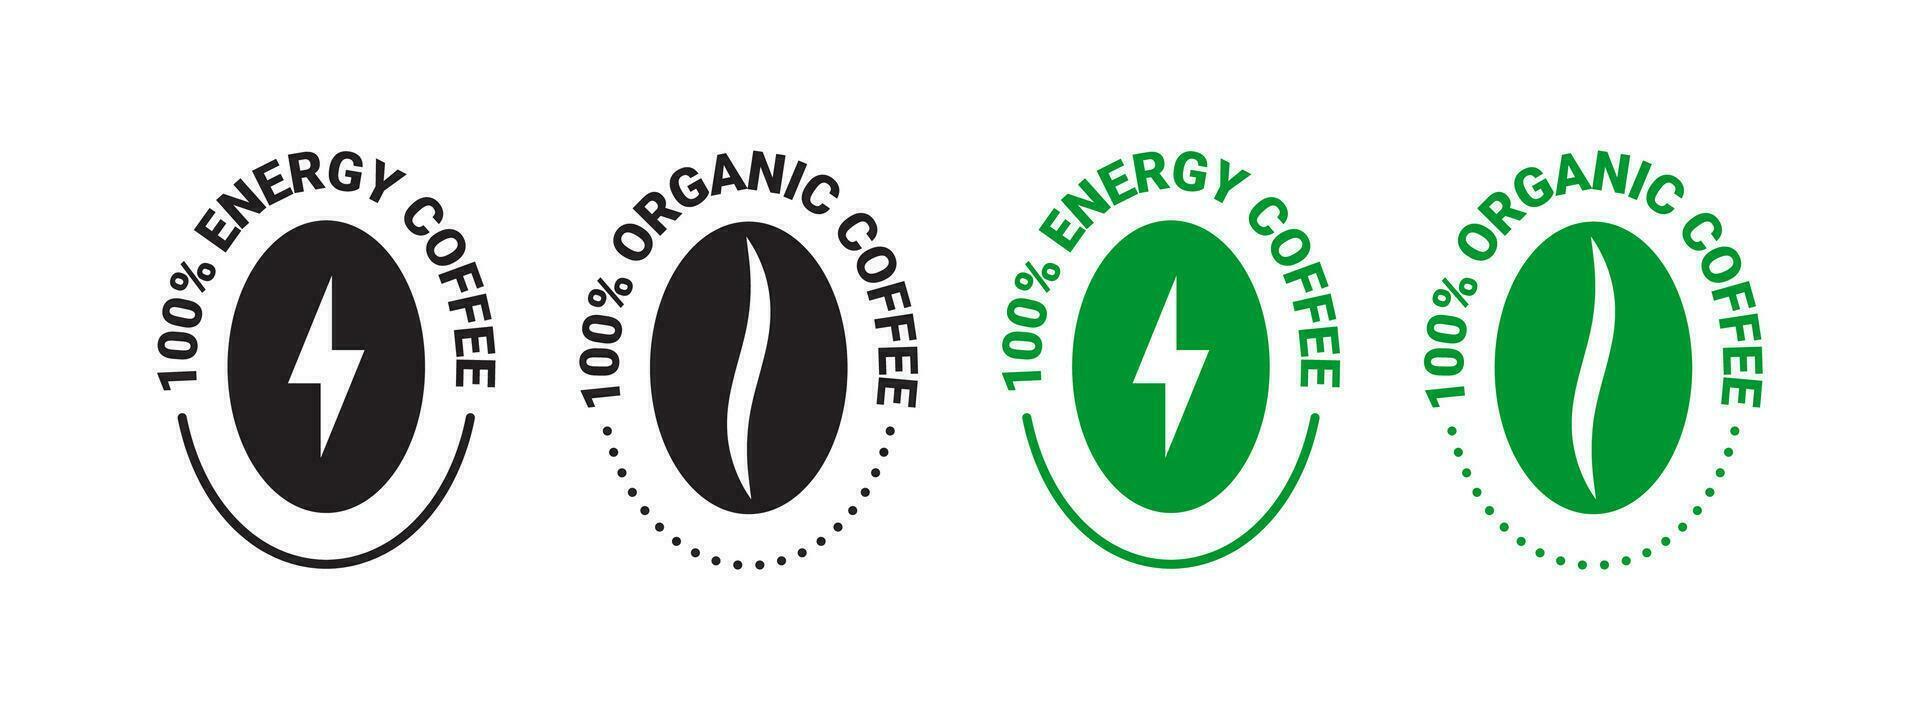 café frijoles. orgánico y energía café. insignias y etiquetas. vector escalable gráficos